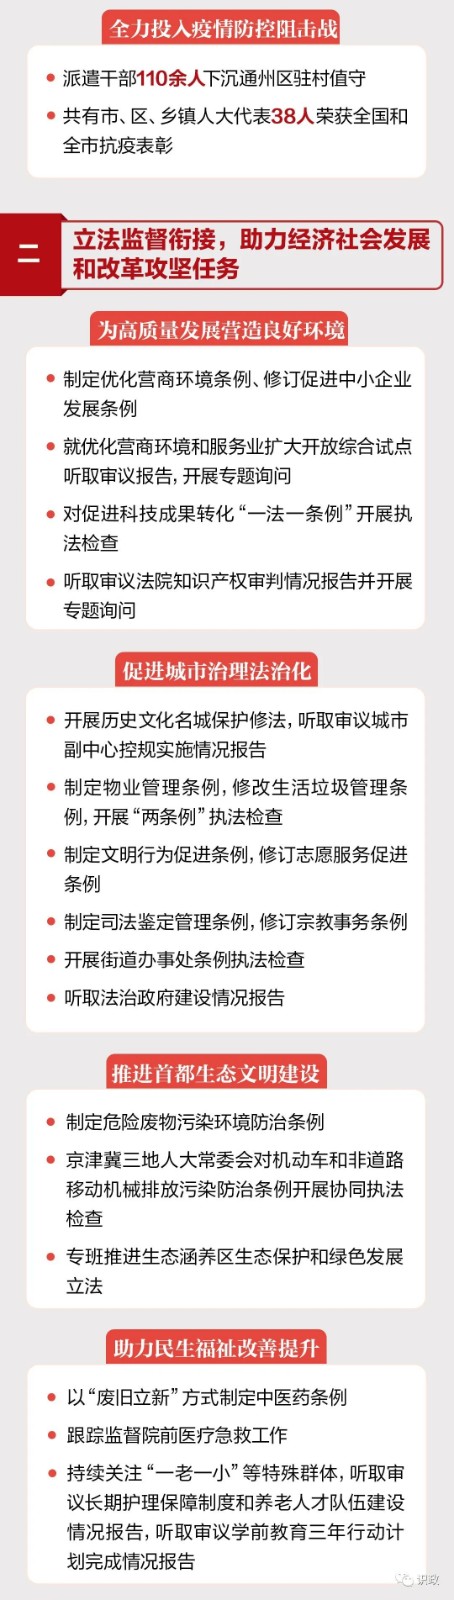 北京自贸试验区、住房租赁等重要法规提上日程-中国网地产